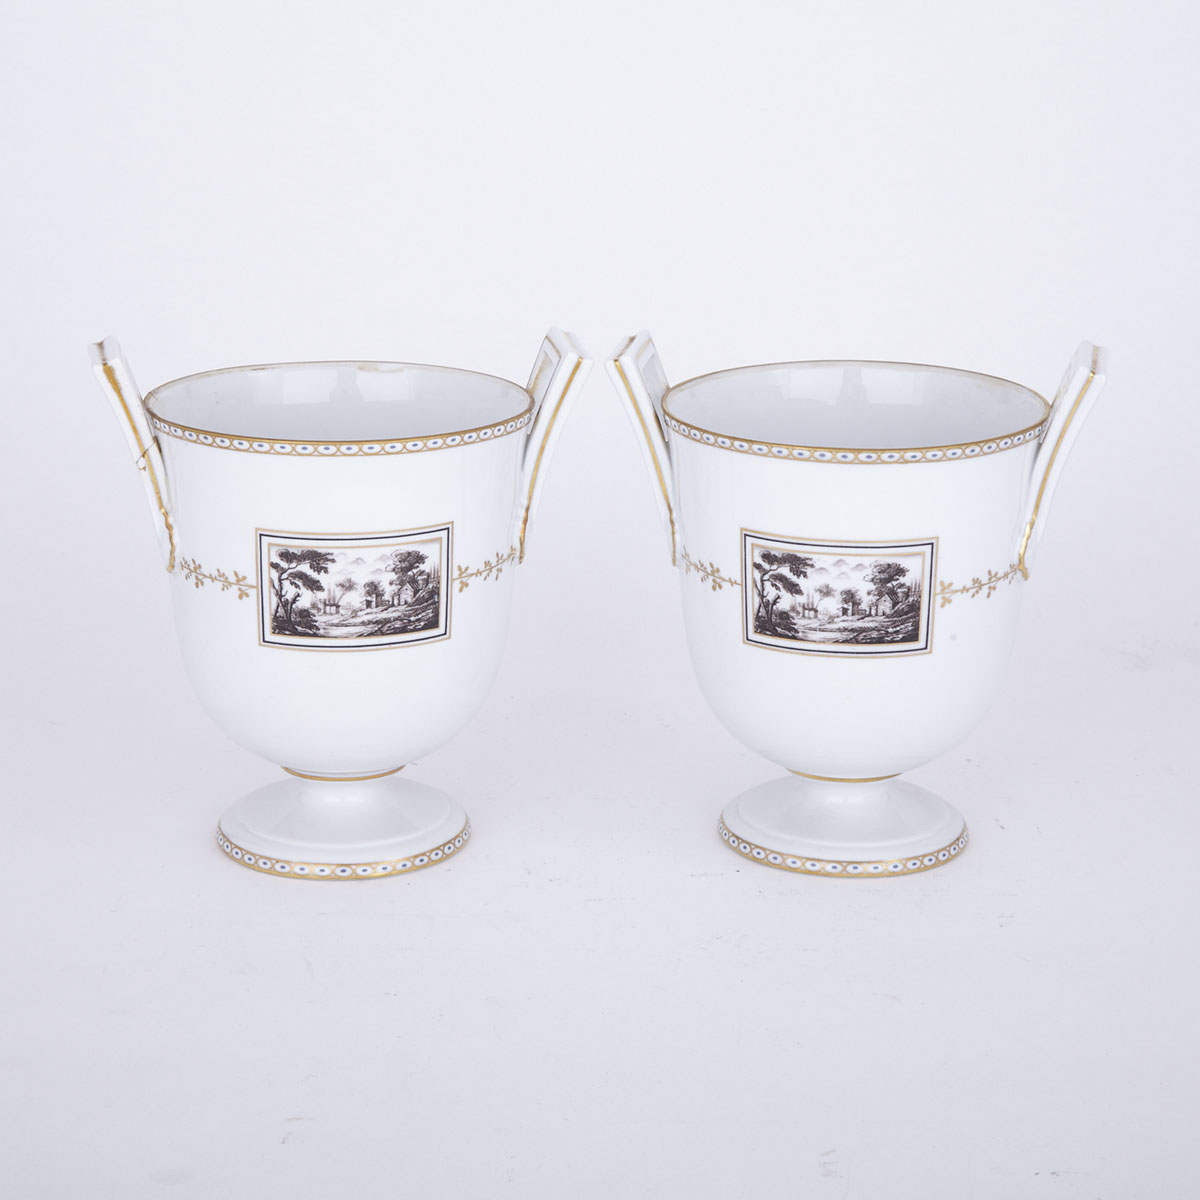 Pair of Richard Ginori Two-Handled Vases, 20th century